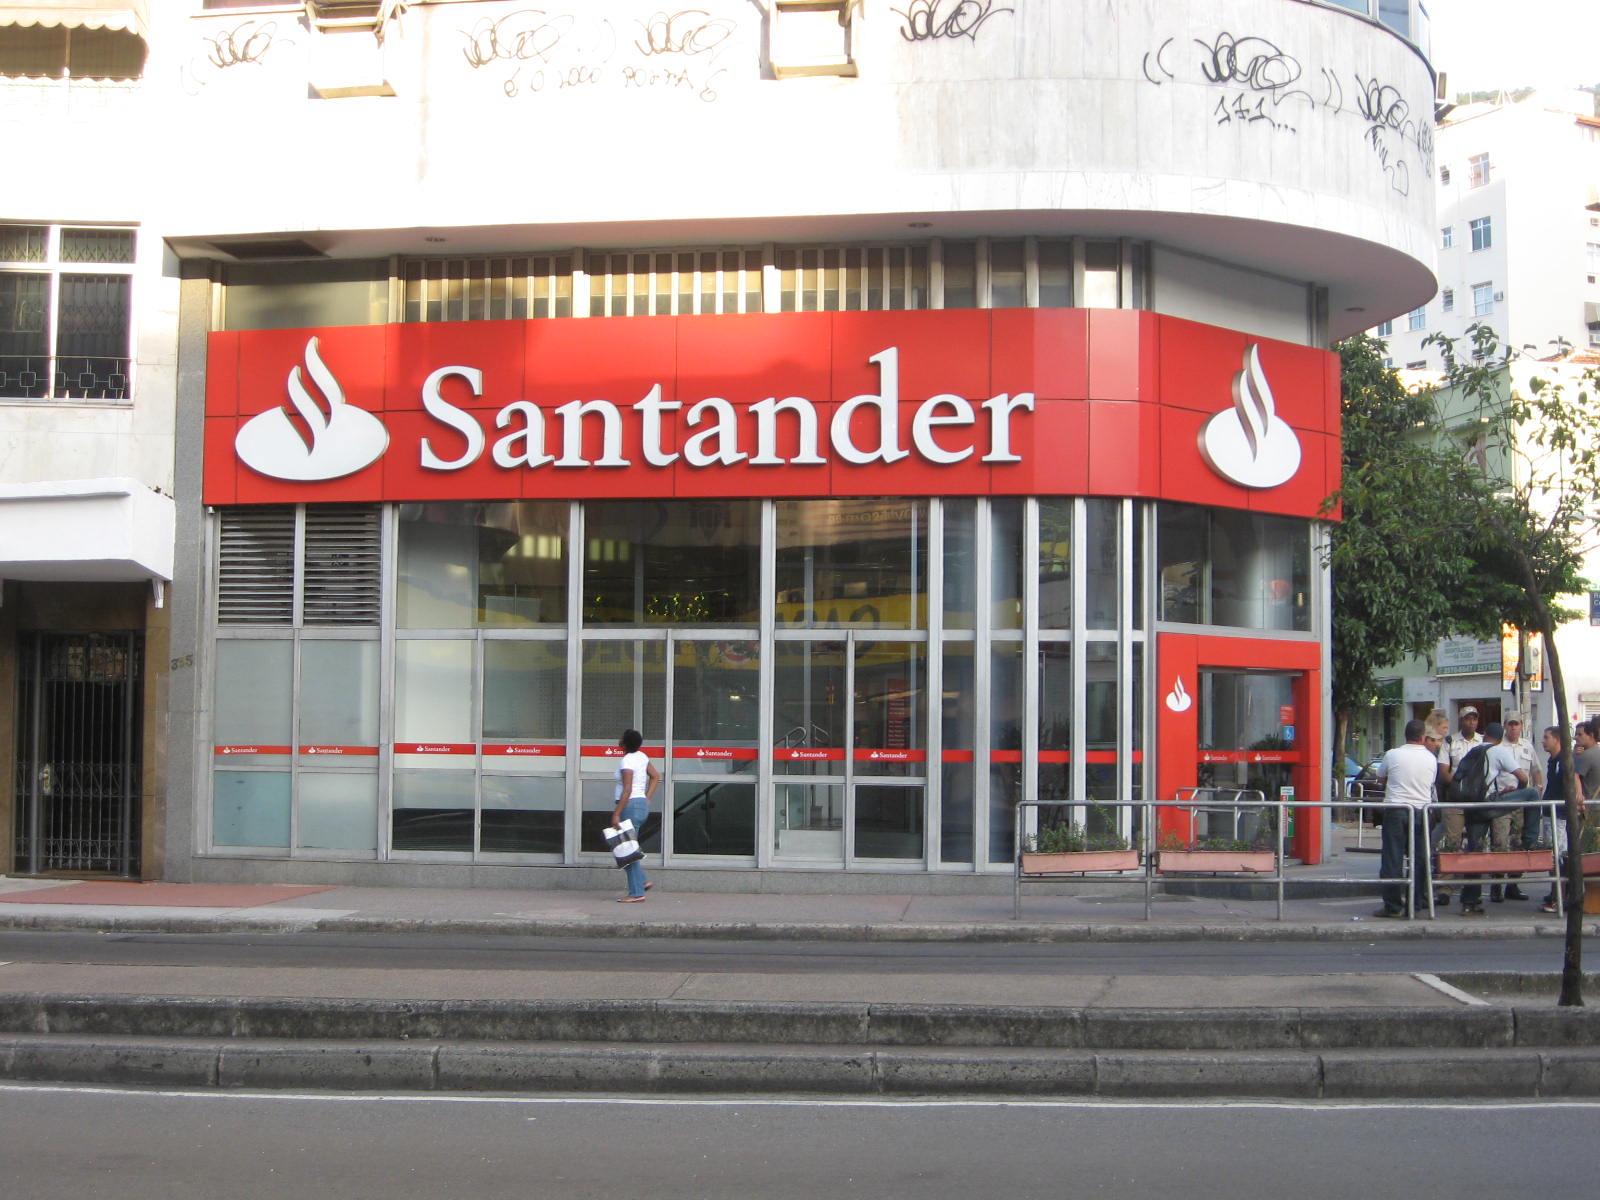 Oddział banku Santander z czerwoną tablicą i logo, przed którym ludzie rozmawiają, a jeden przechodzi obok na chodniku.